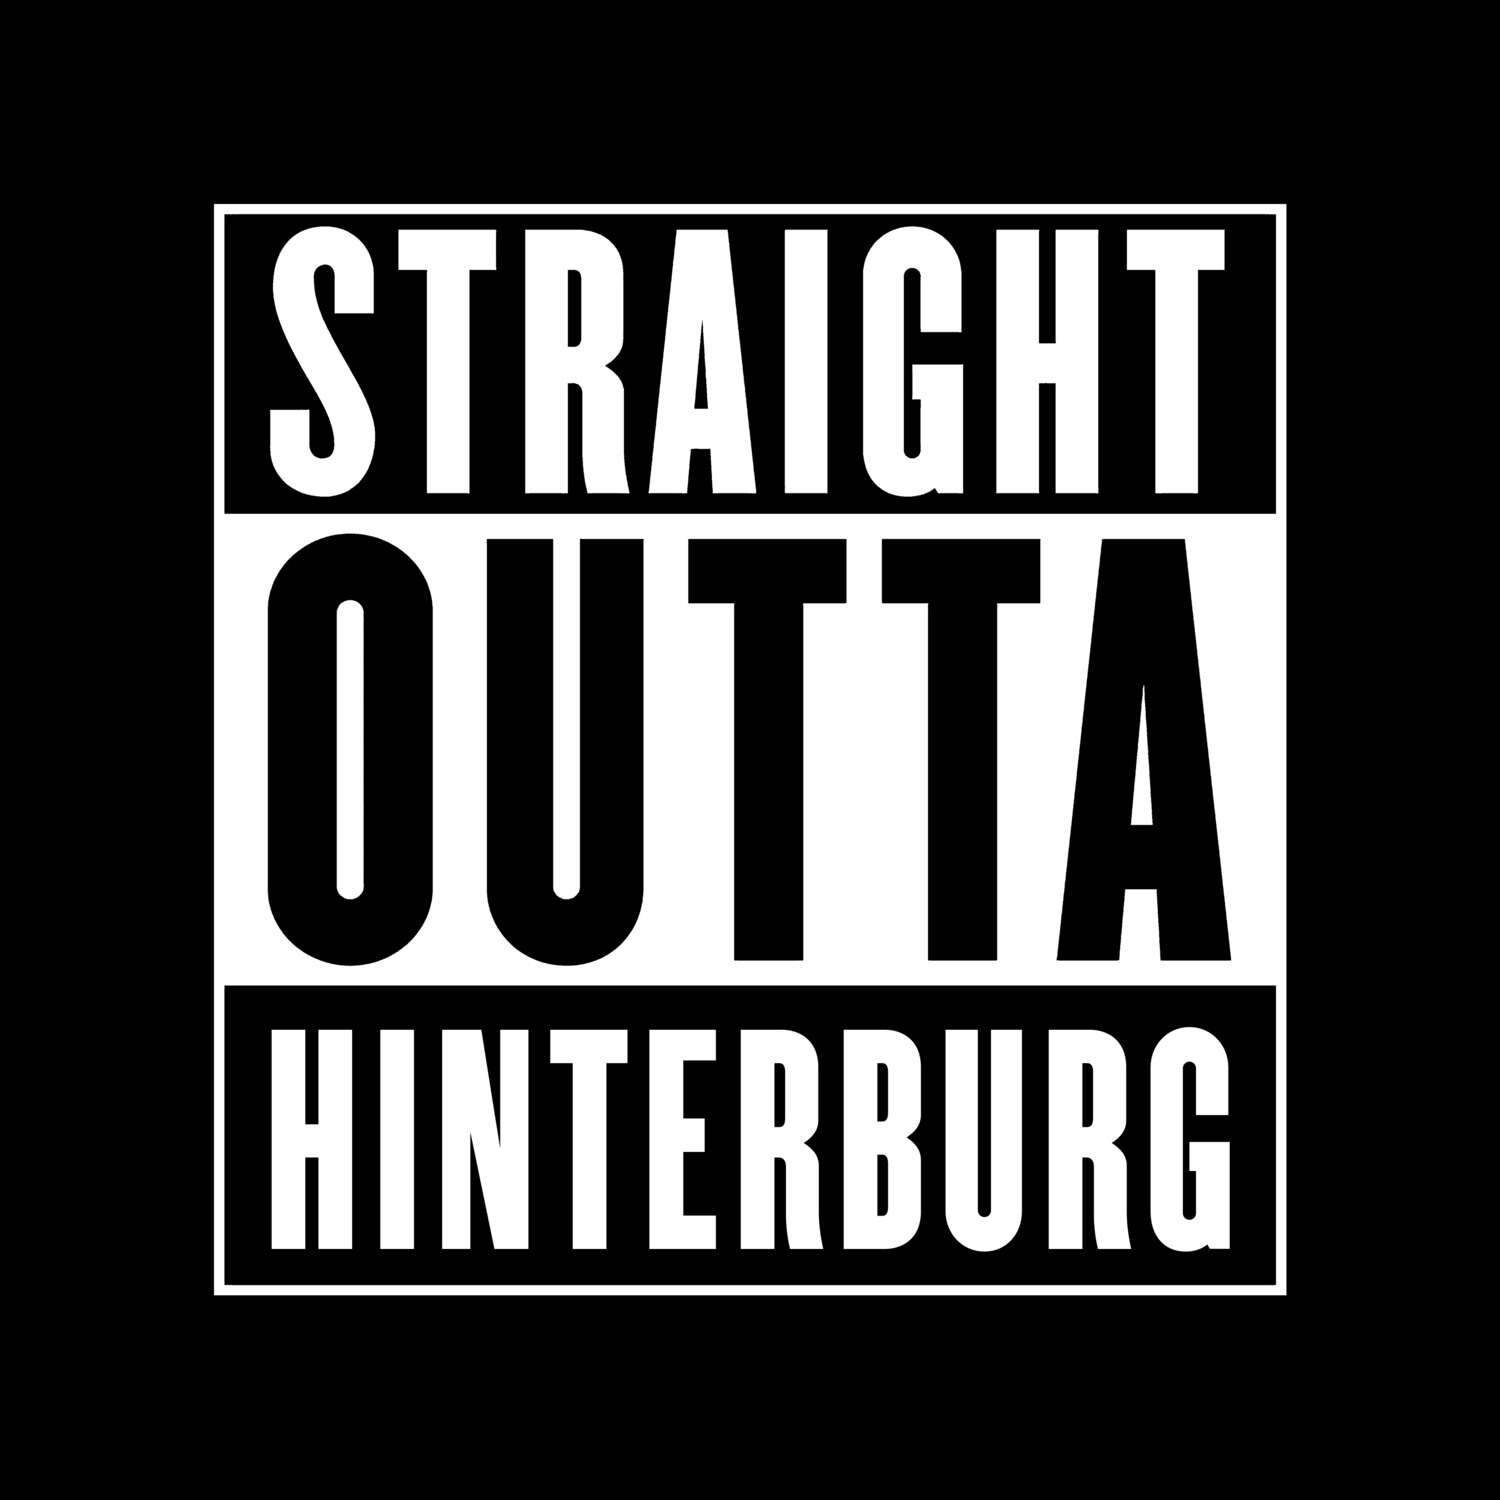 Hinterburg T-Shirt »Straight Outta«